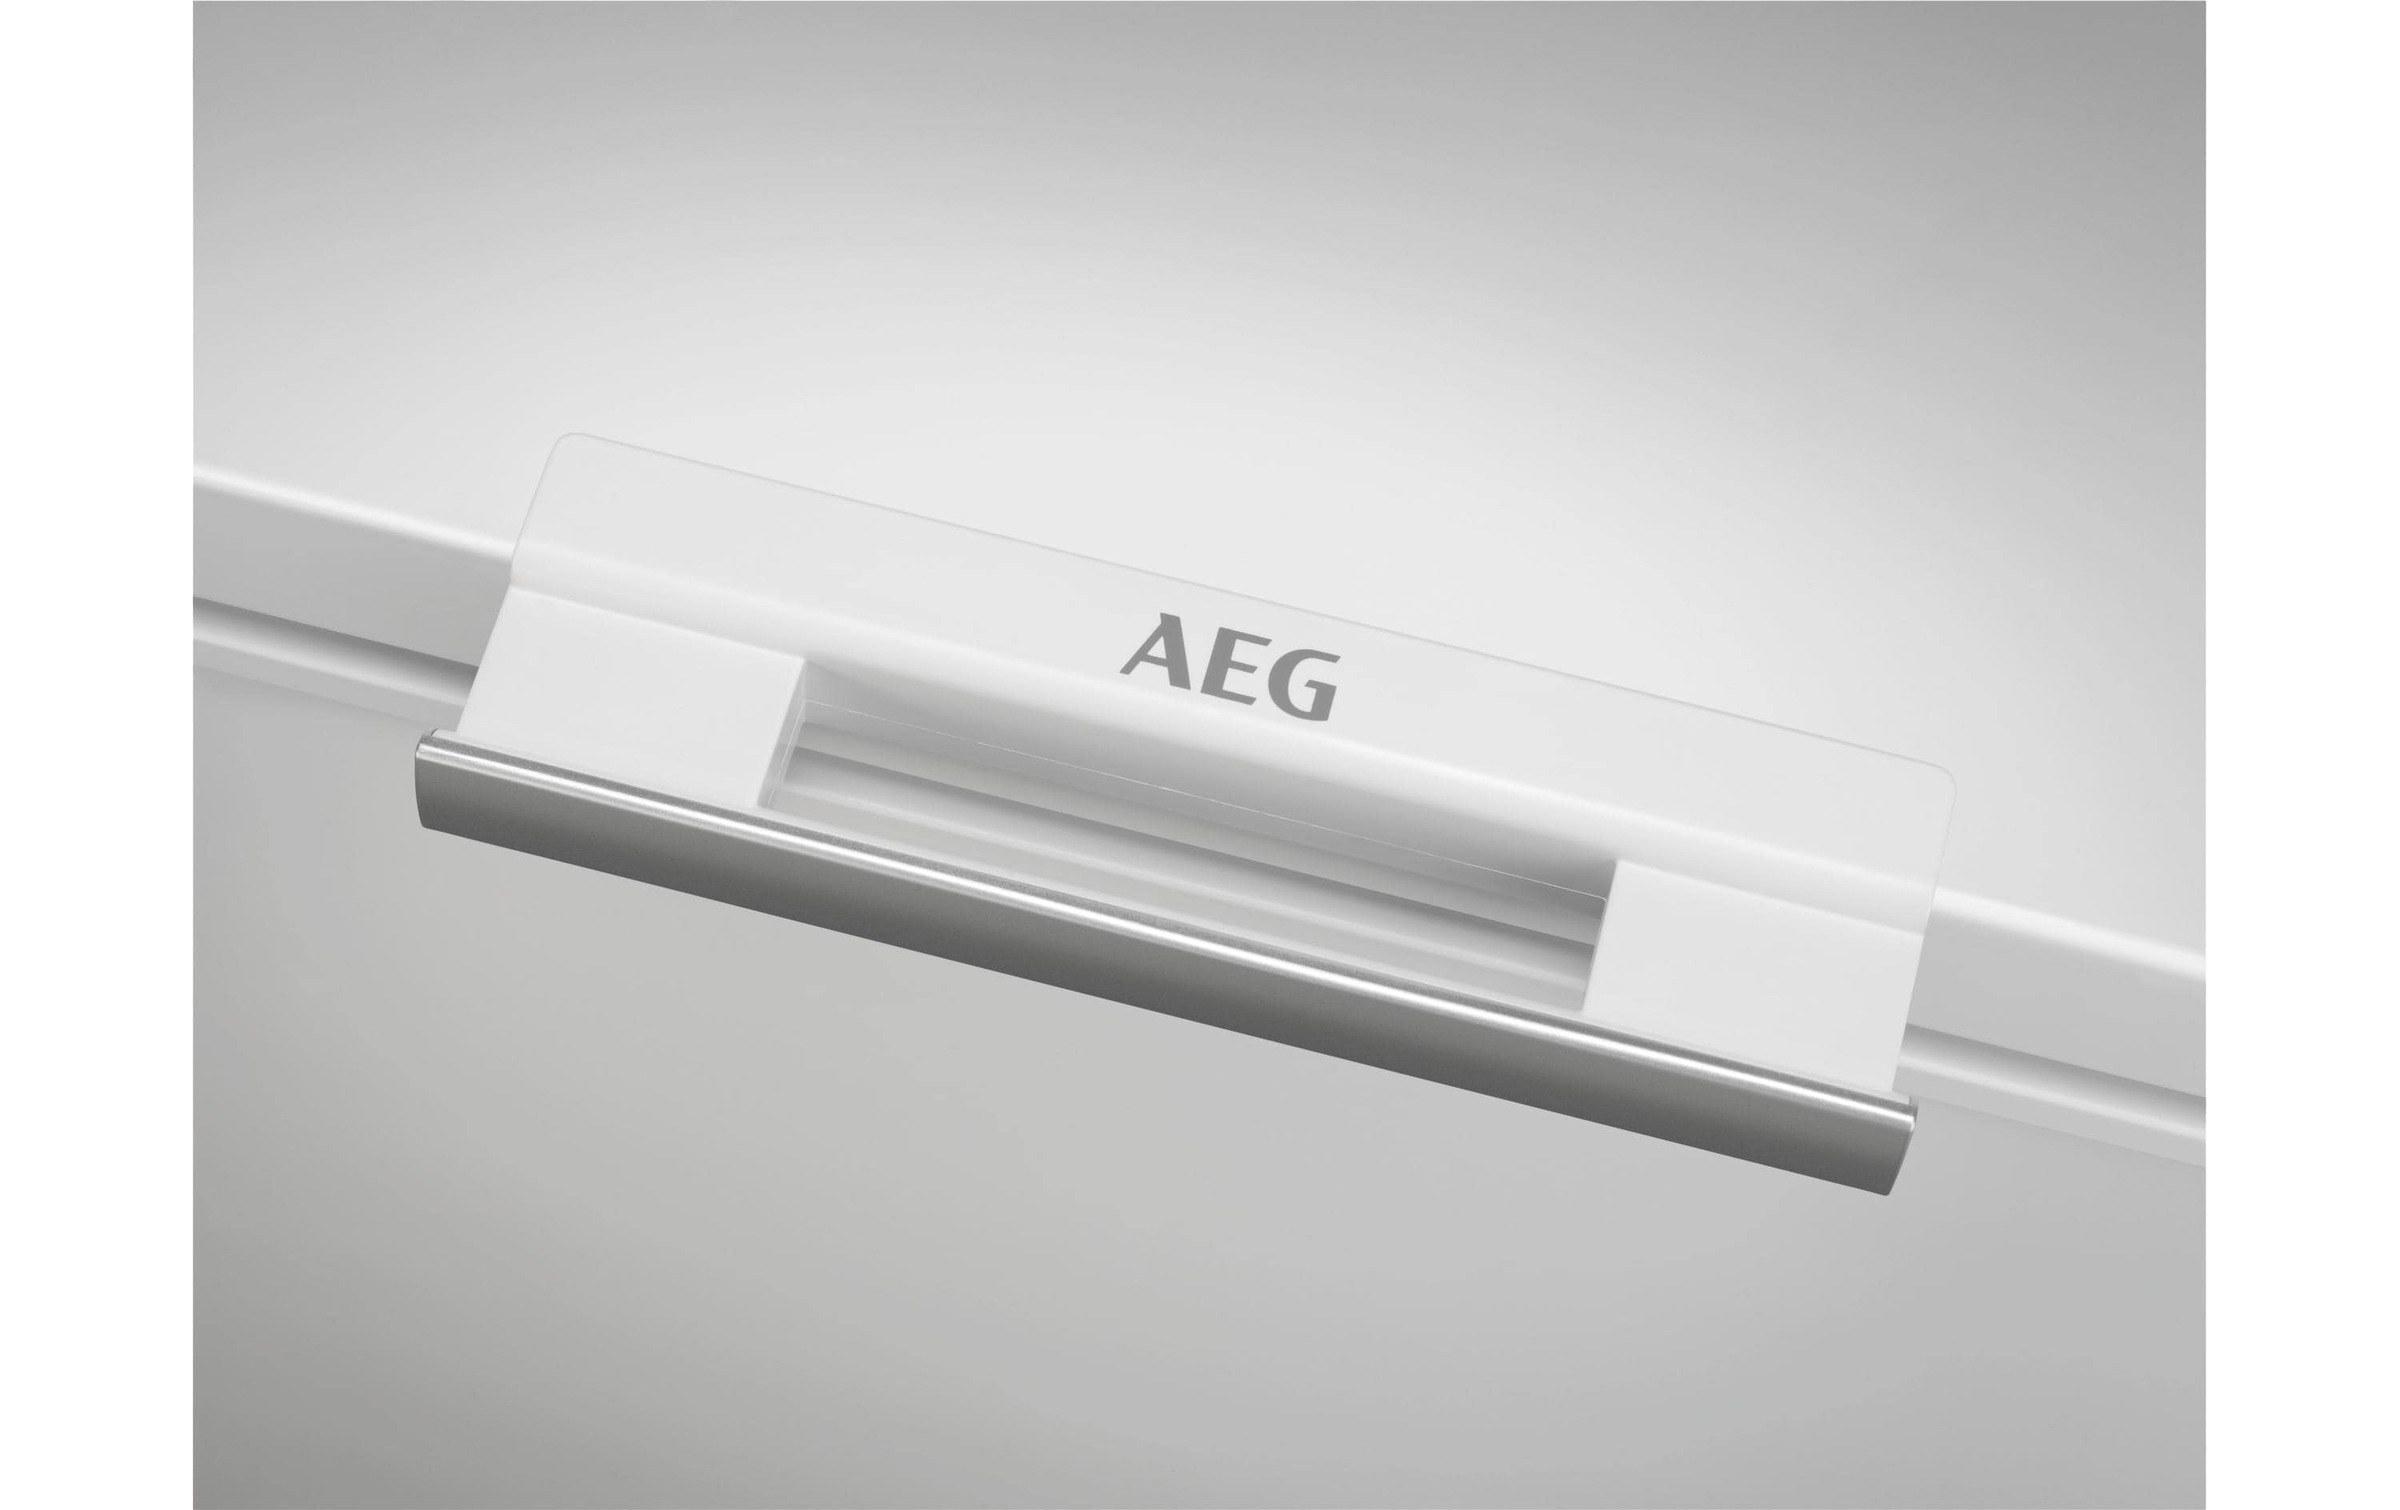 AEG Gefriertruhe »Gefriertruhe AGT260«, 84,5 cm hoch, 96 cm breit